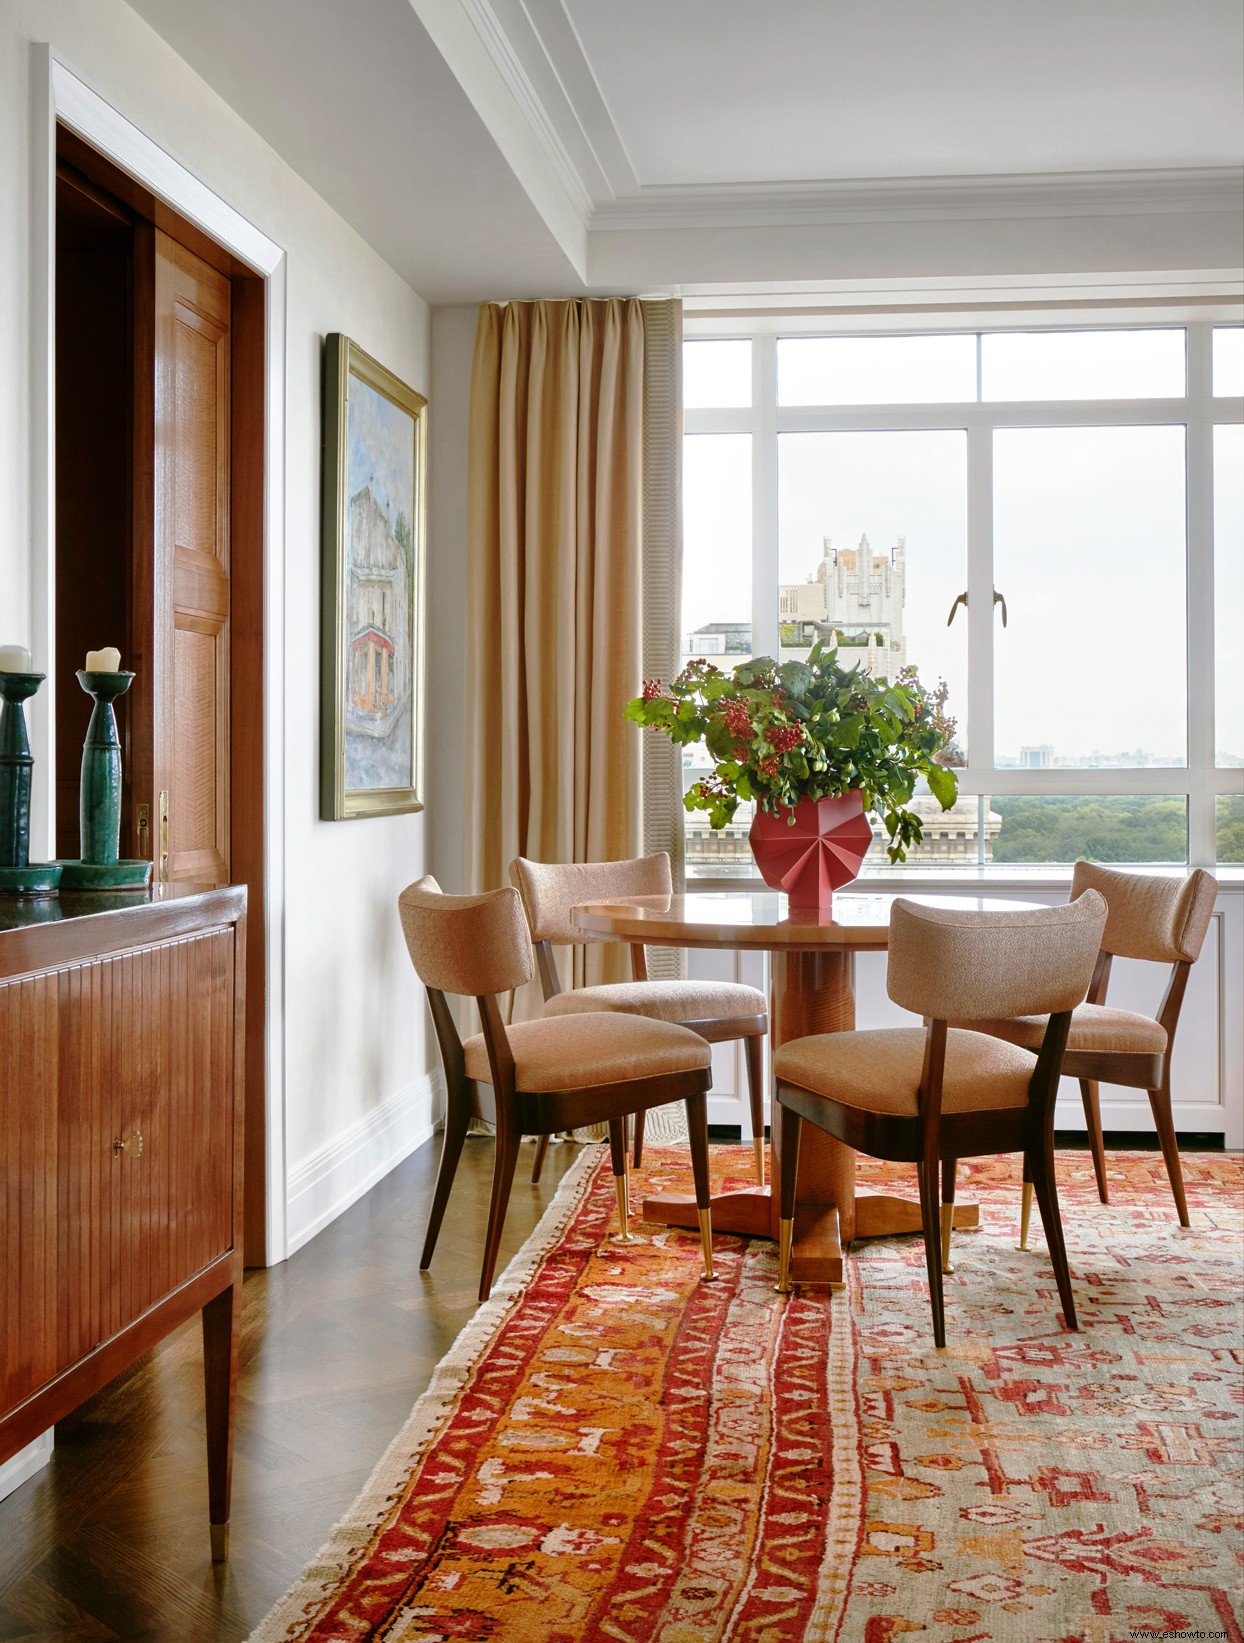 Las habitaciones inspiradas en la naturaleza complementan las vistas de Central Park en este apartamento de Manhattan 